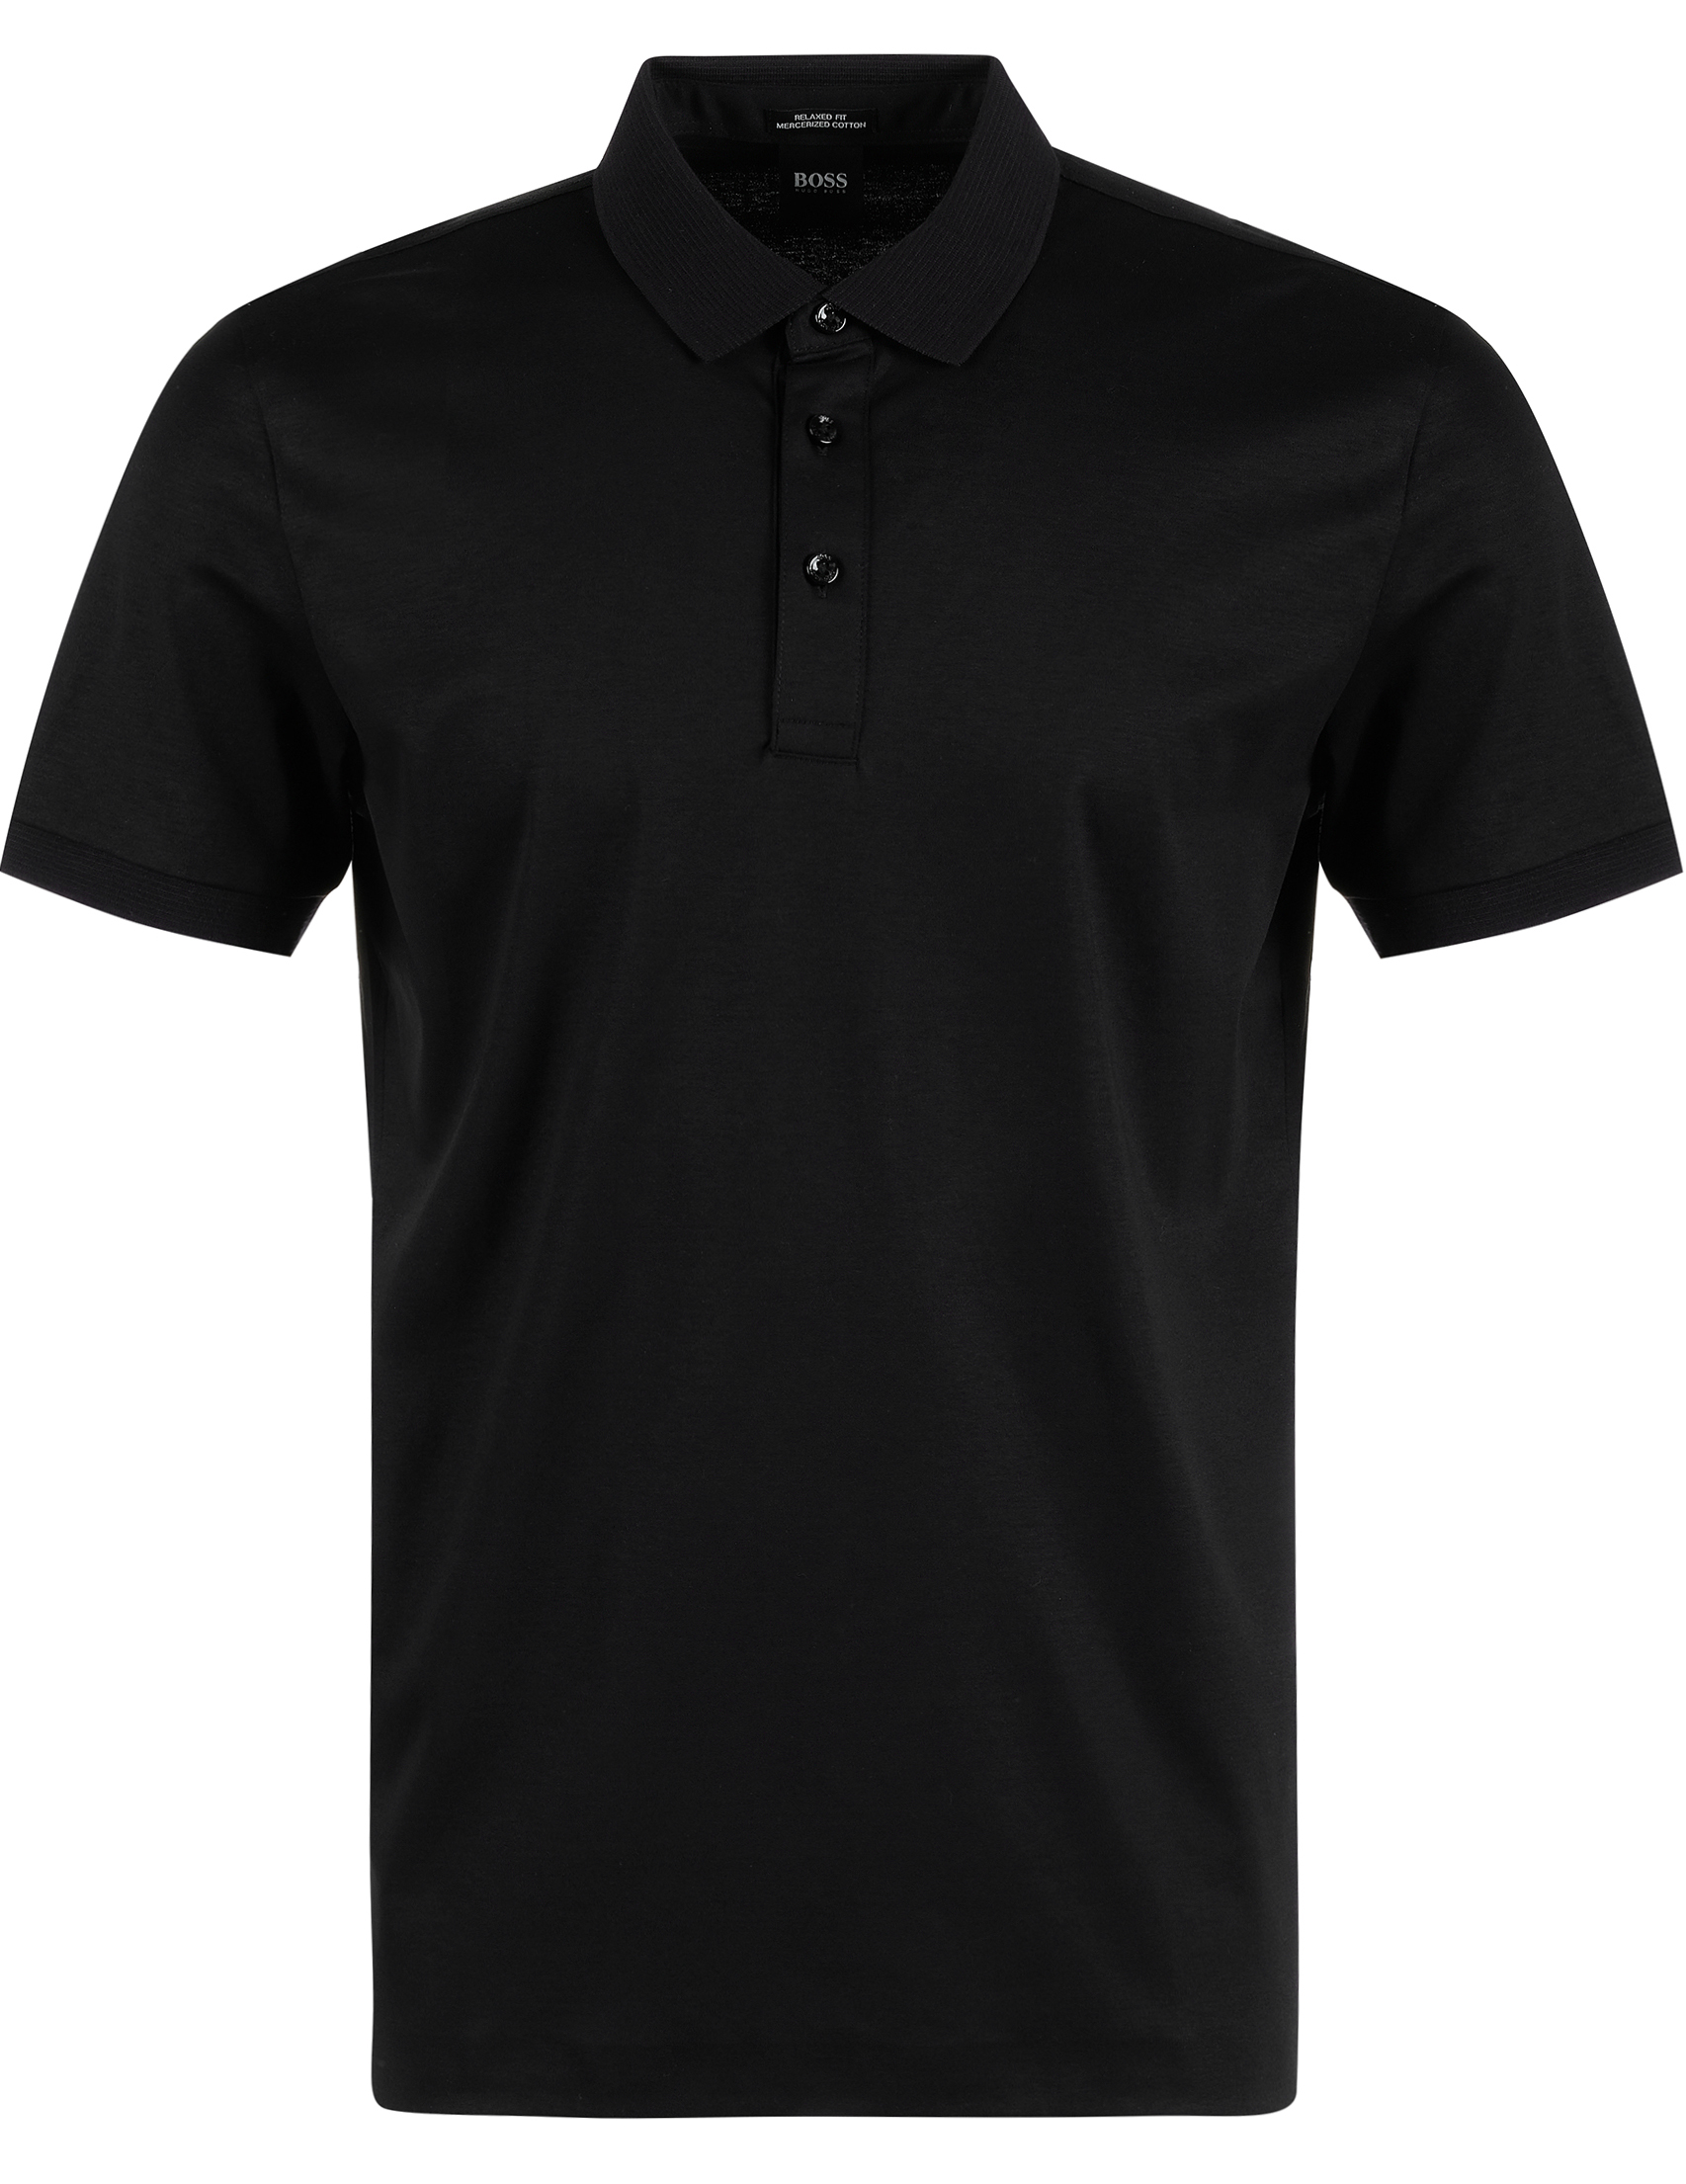 Черная футболка с черной рубашкой